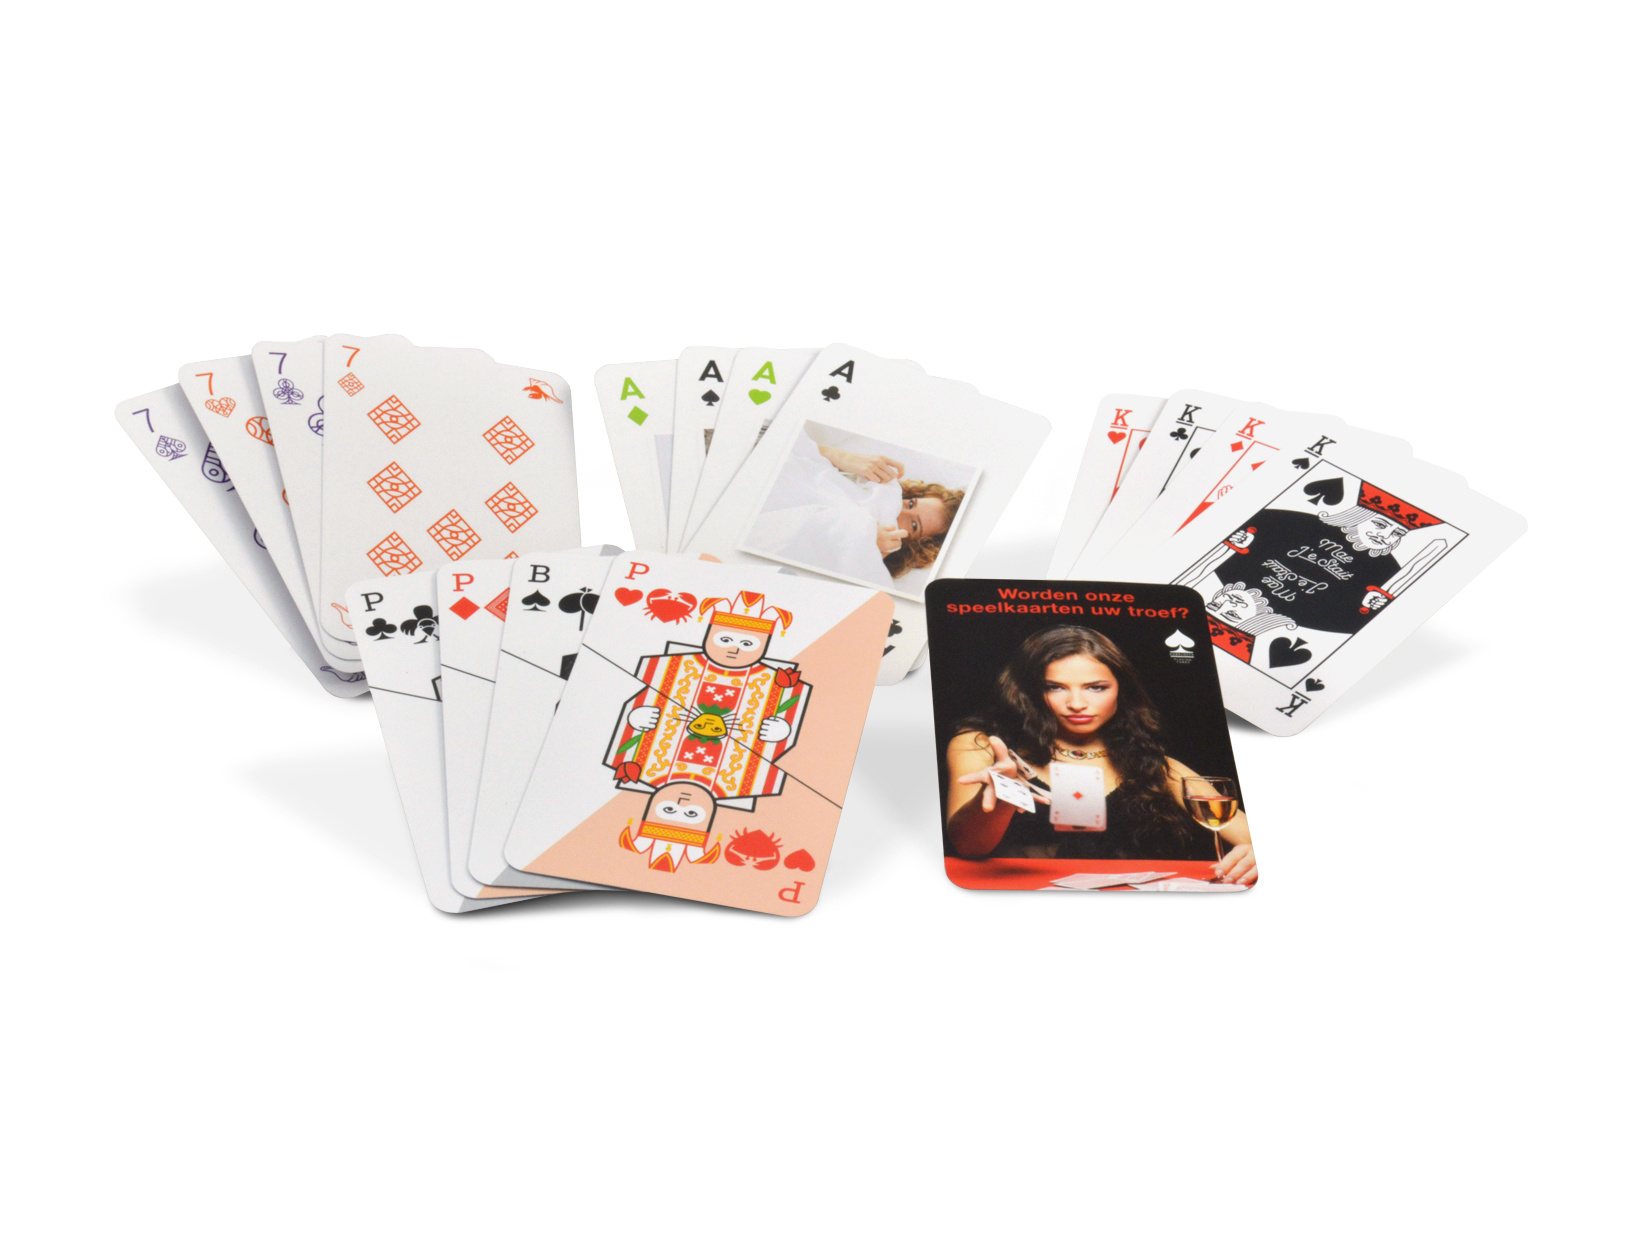 Jeu de cartes à jouer classiques 54 cartes française pas chers